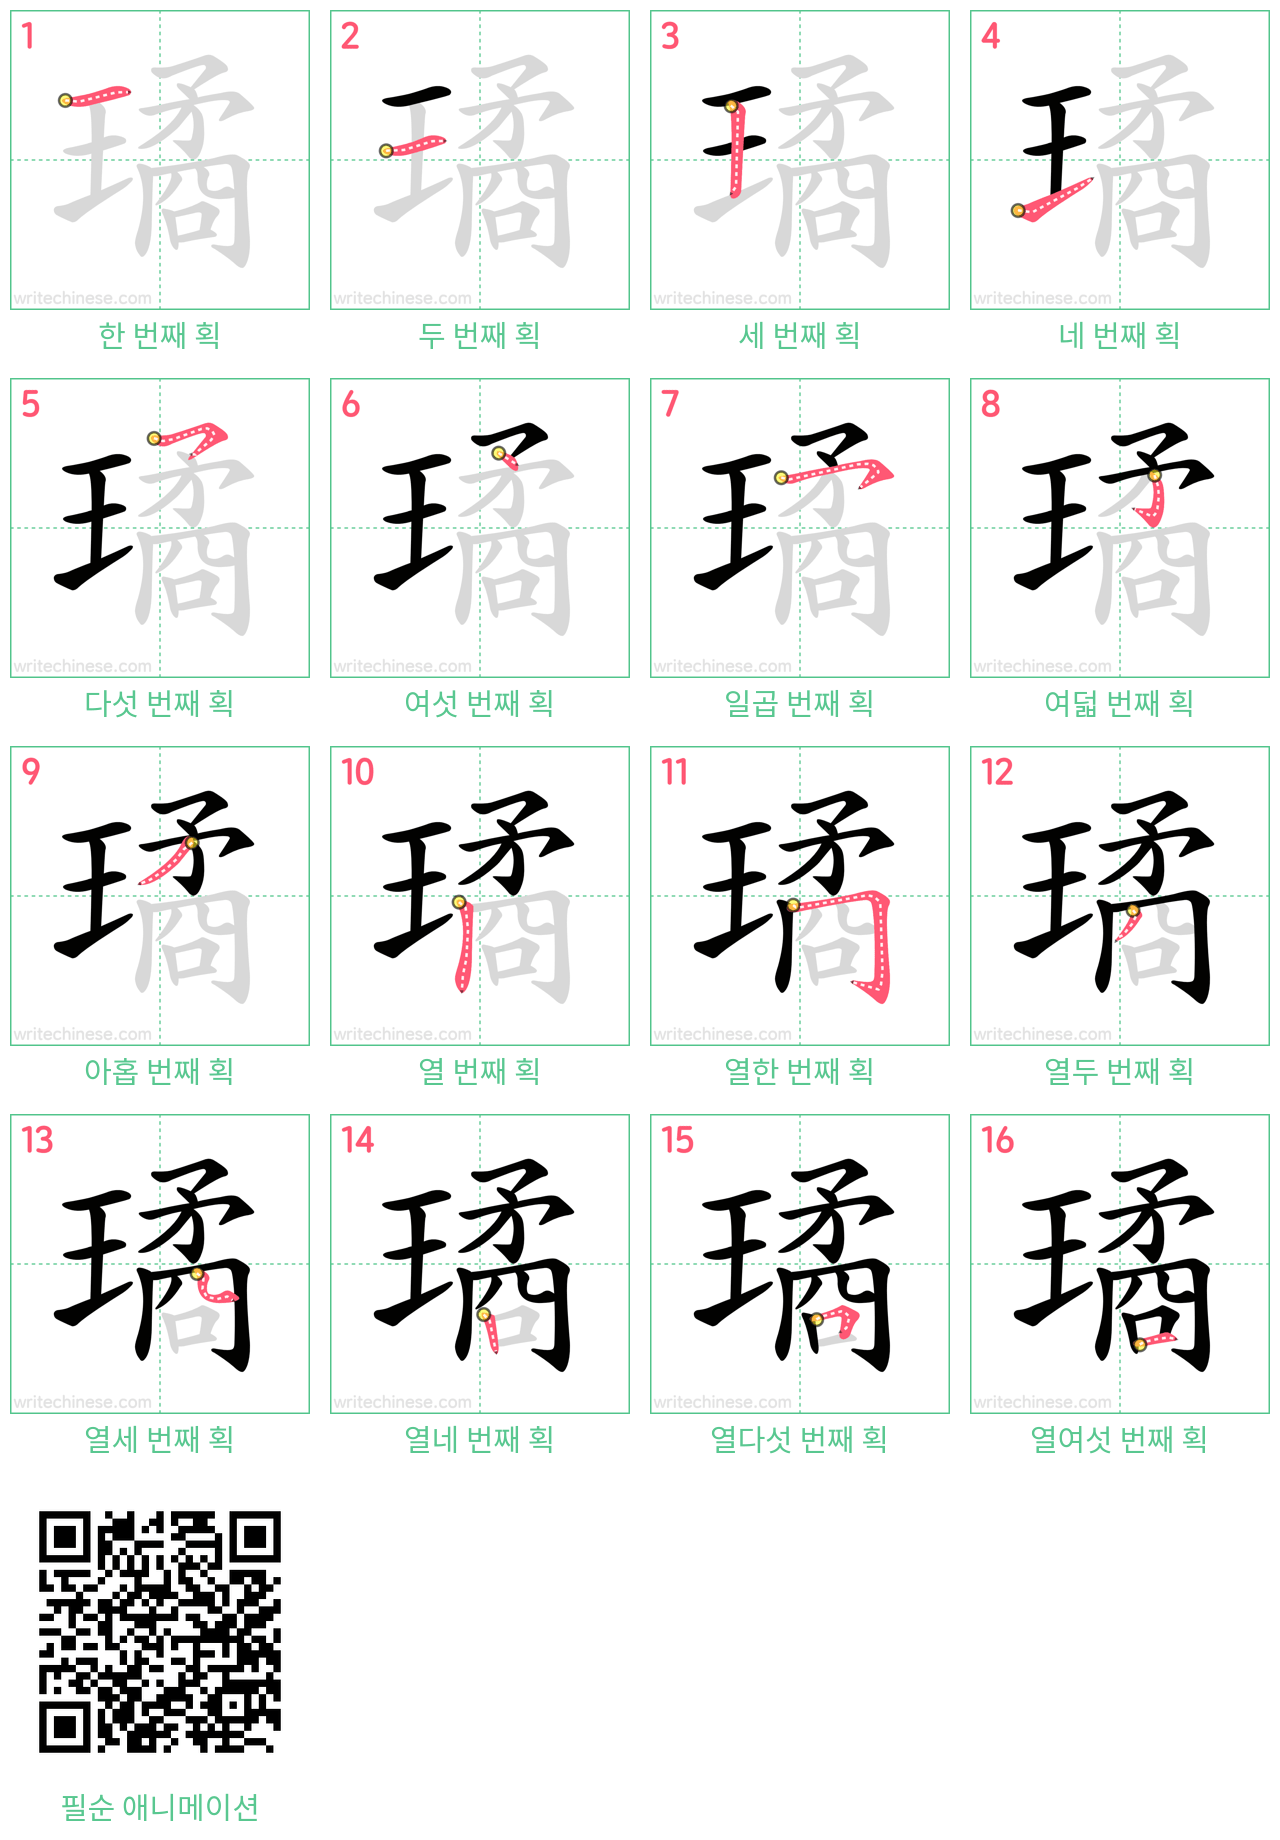 璚 step-by-step stroke order diagrams